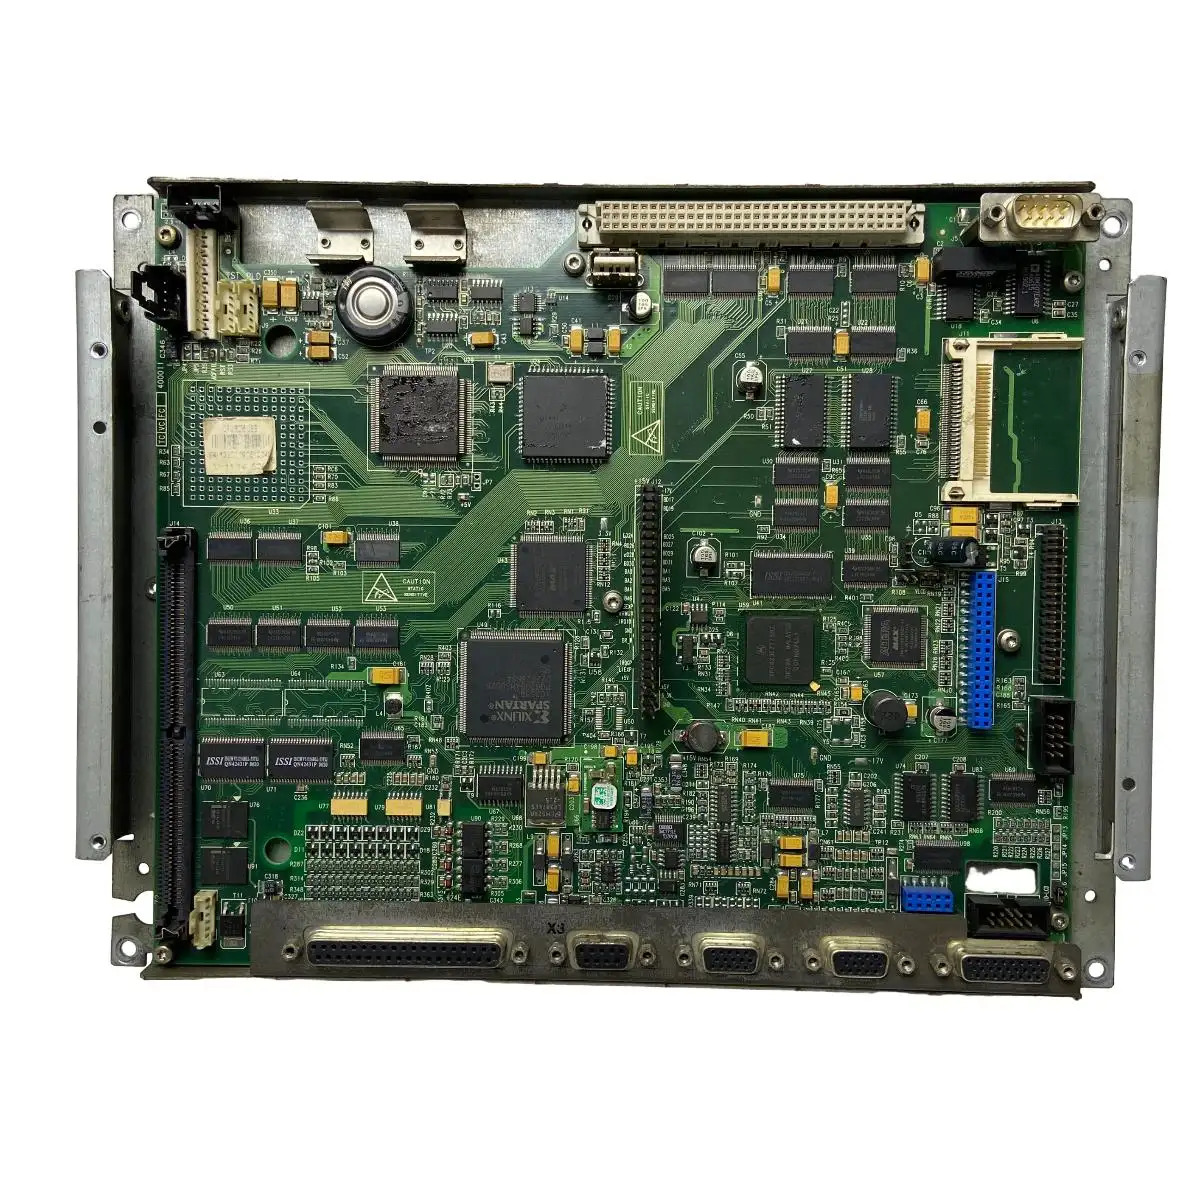 コントローラーCPU8035 CPU 8036 TECLADO-55 LCD LCD MONOCROMO 8040